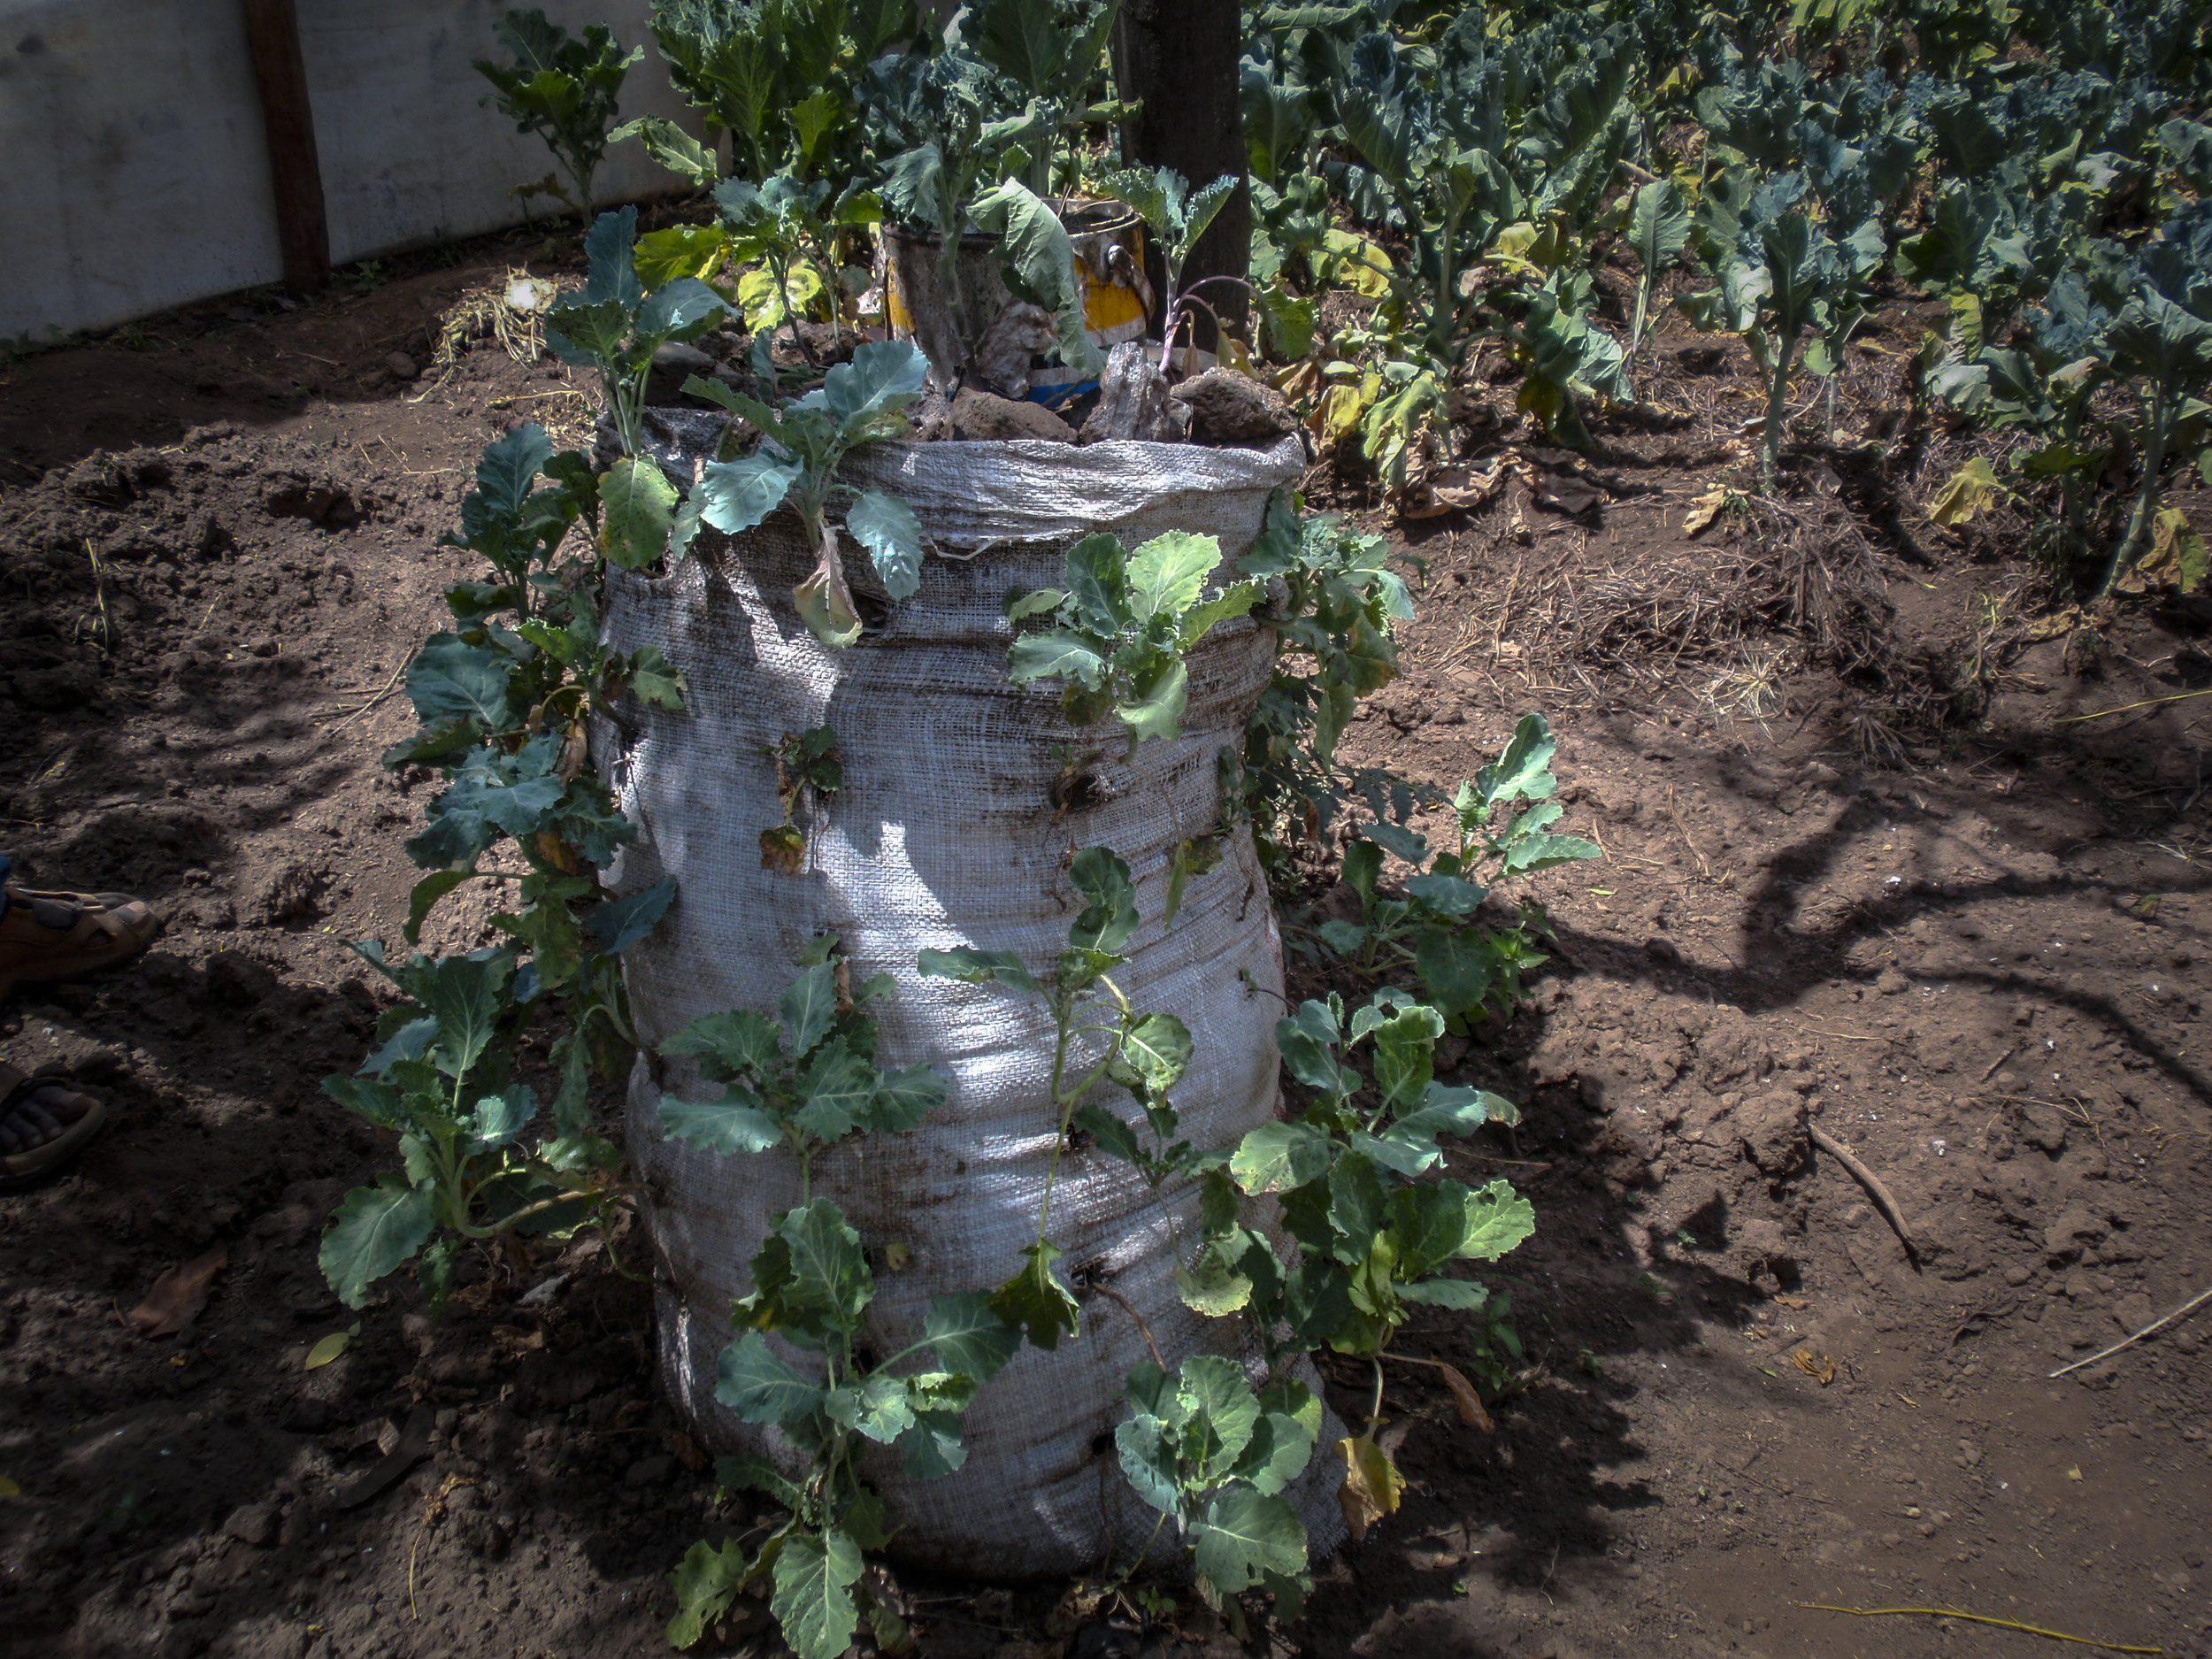 A sack garden conserves water